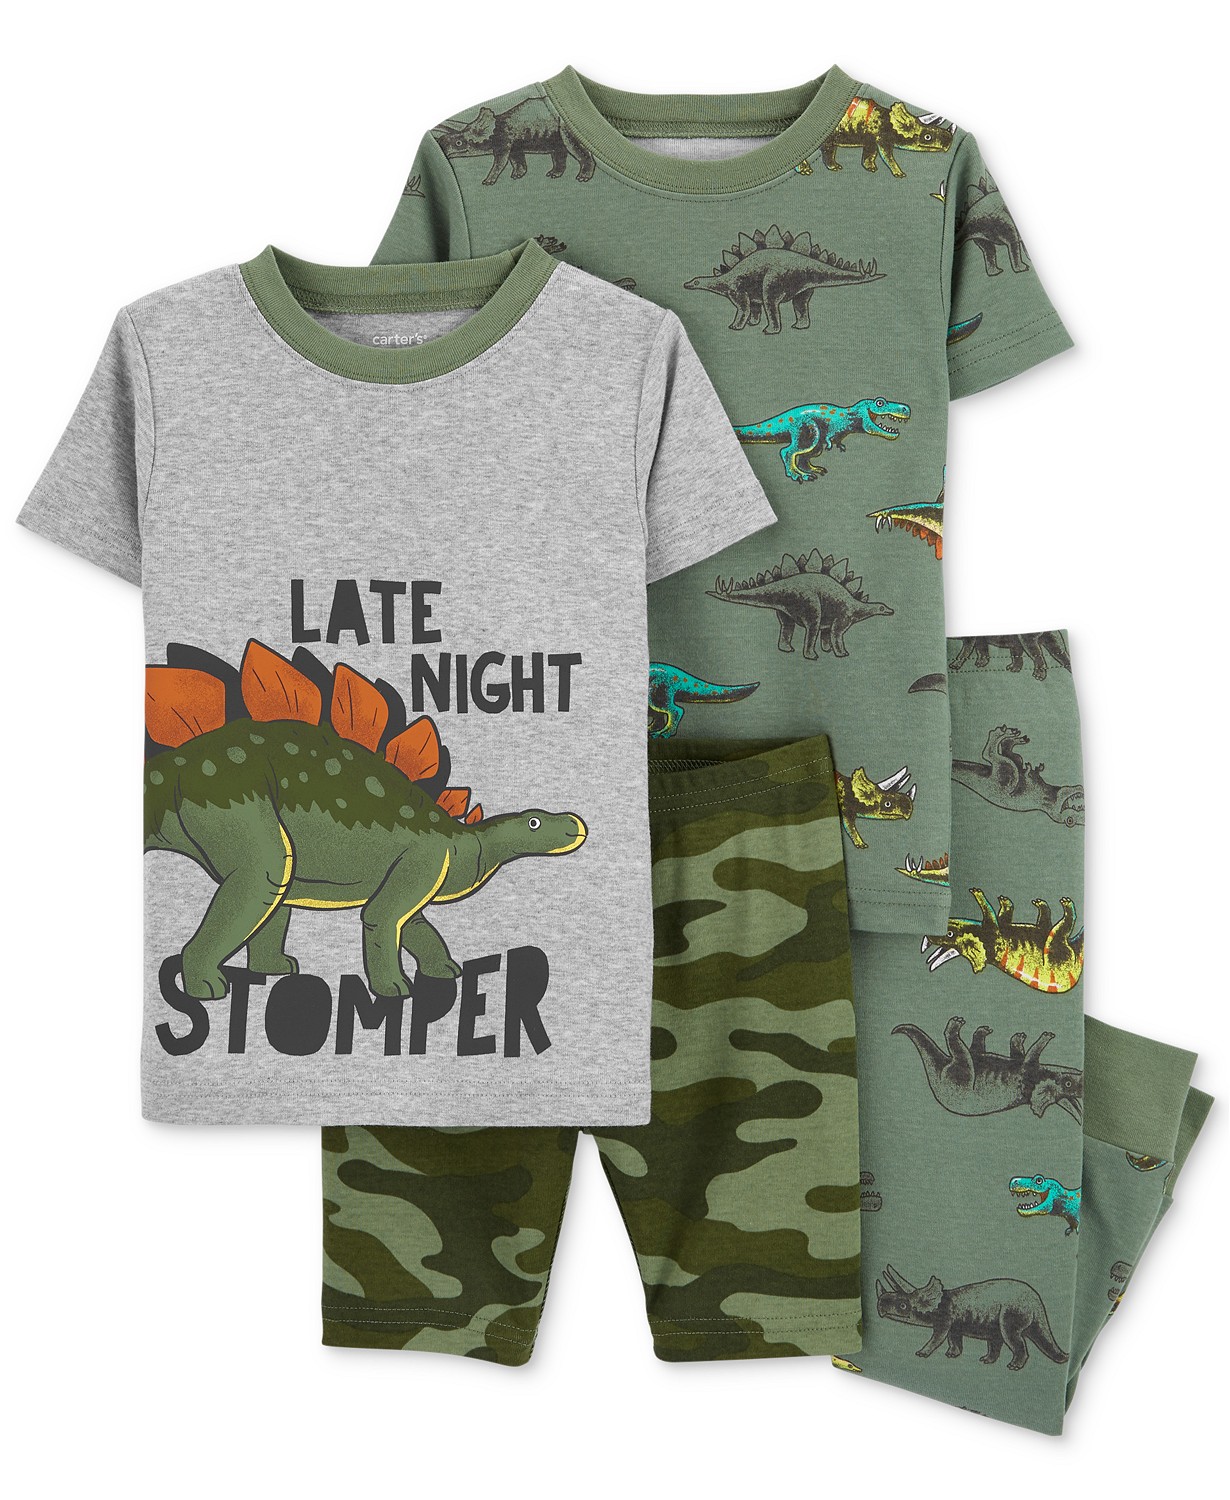 Toddler Boys 4-Pc. Snug Fit Dinosaur-Print Pajama Set